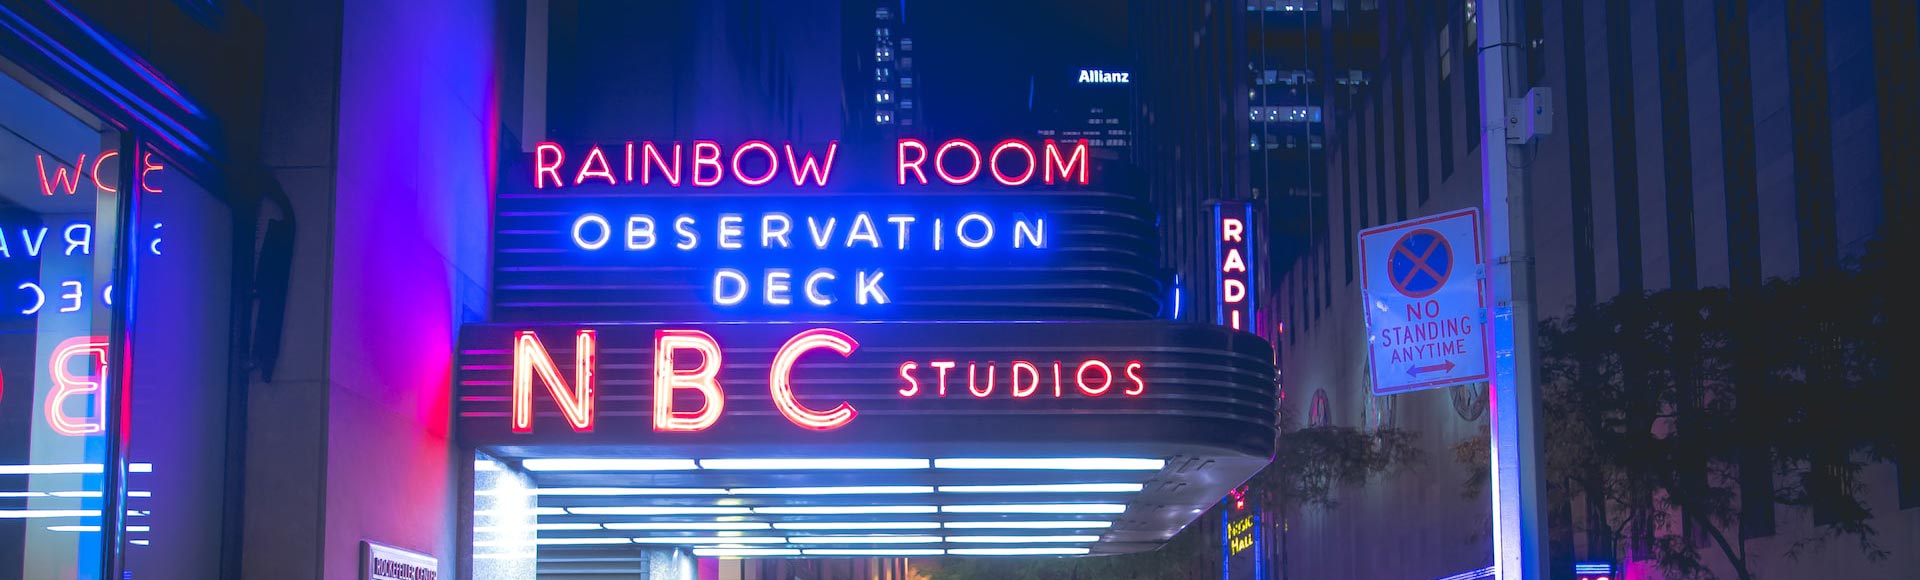 Sinal de néon no convés de observação da NBC à noite